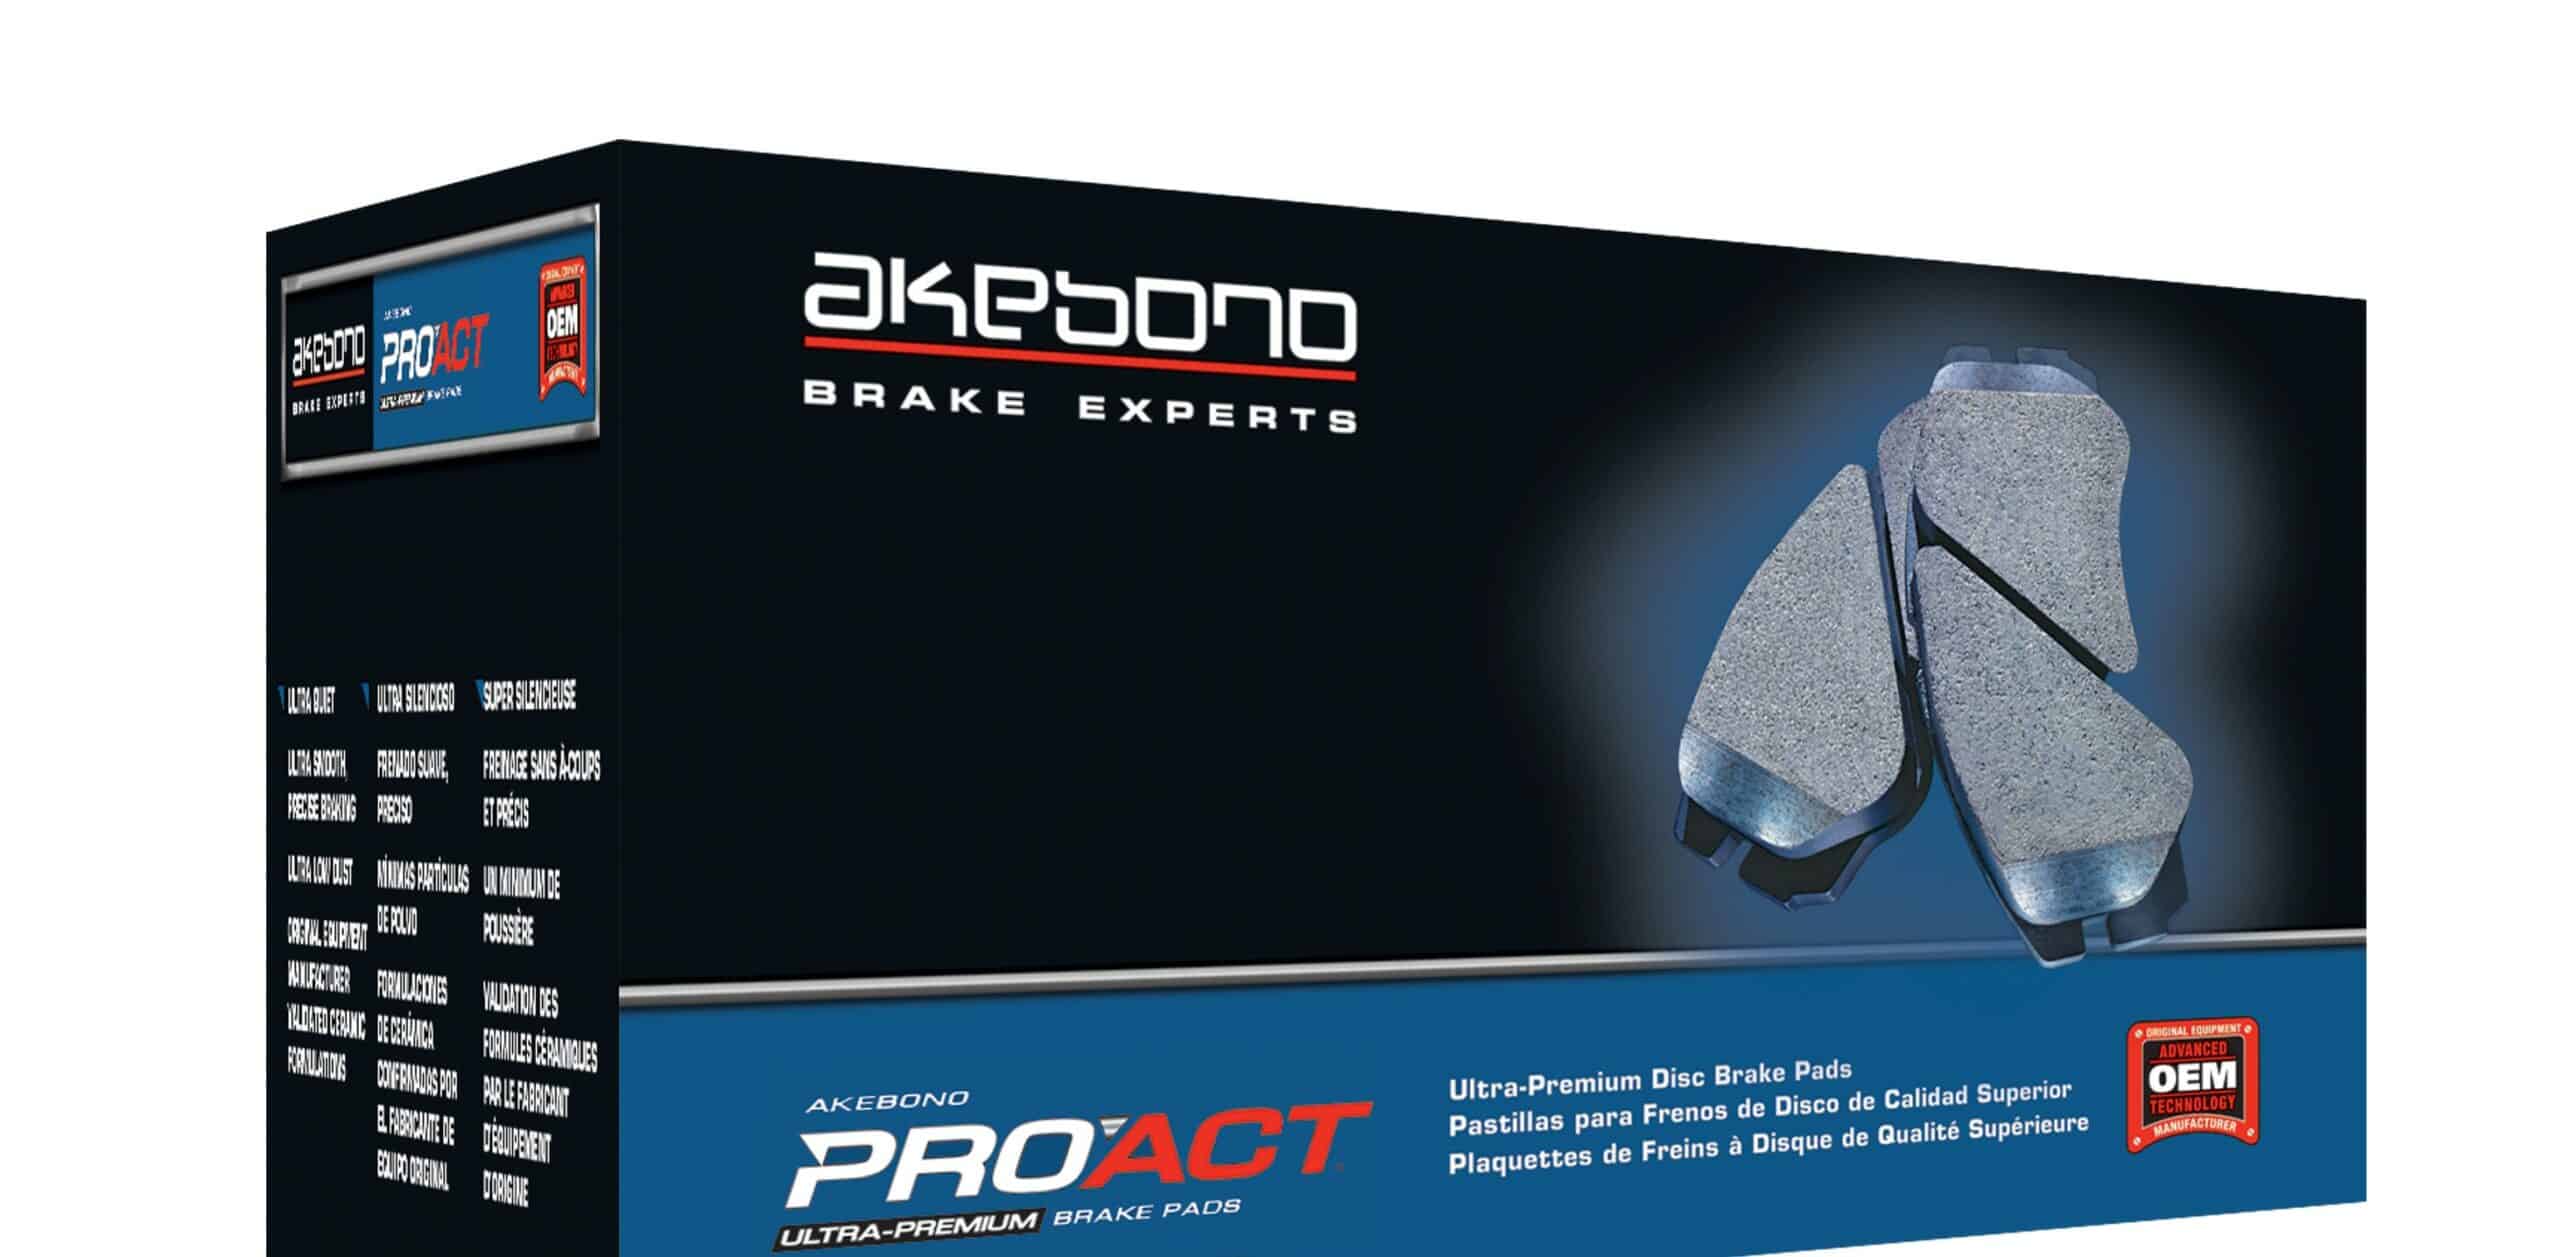 Akebono expanded its product range